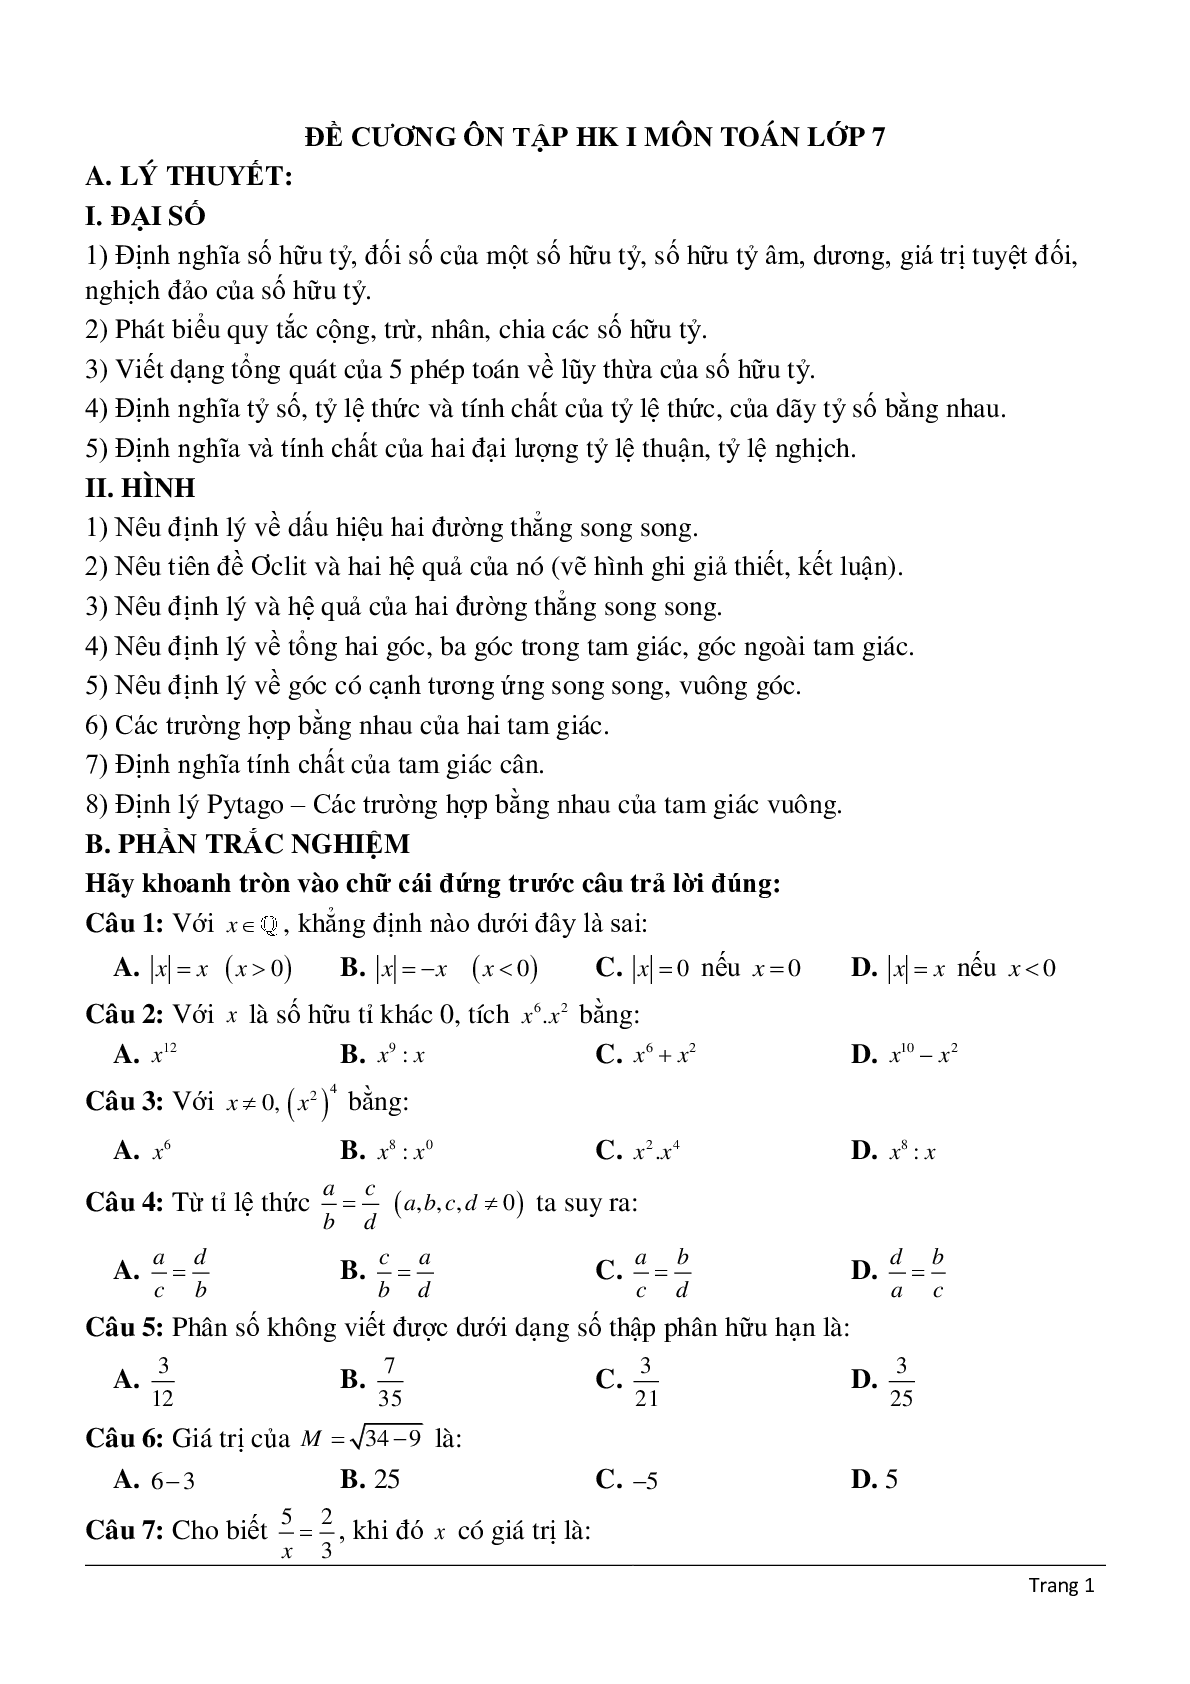 Đề cương ôn tập học kì 1 môn toán lớp 7 (trang 1)